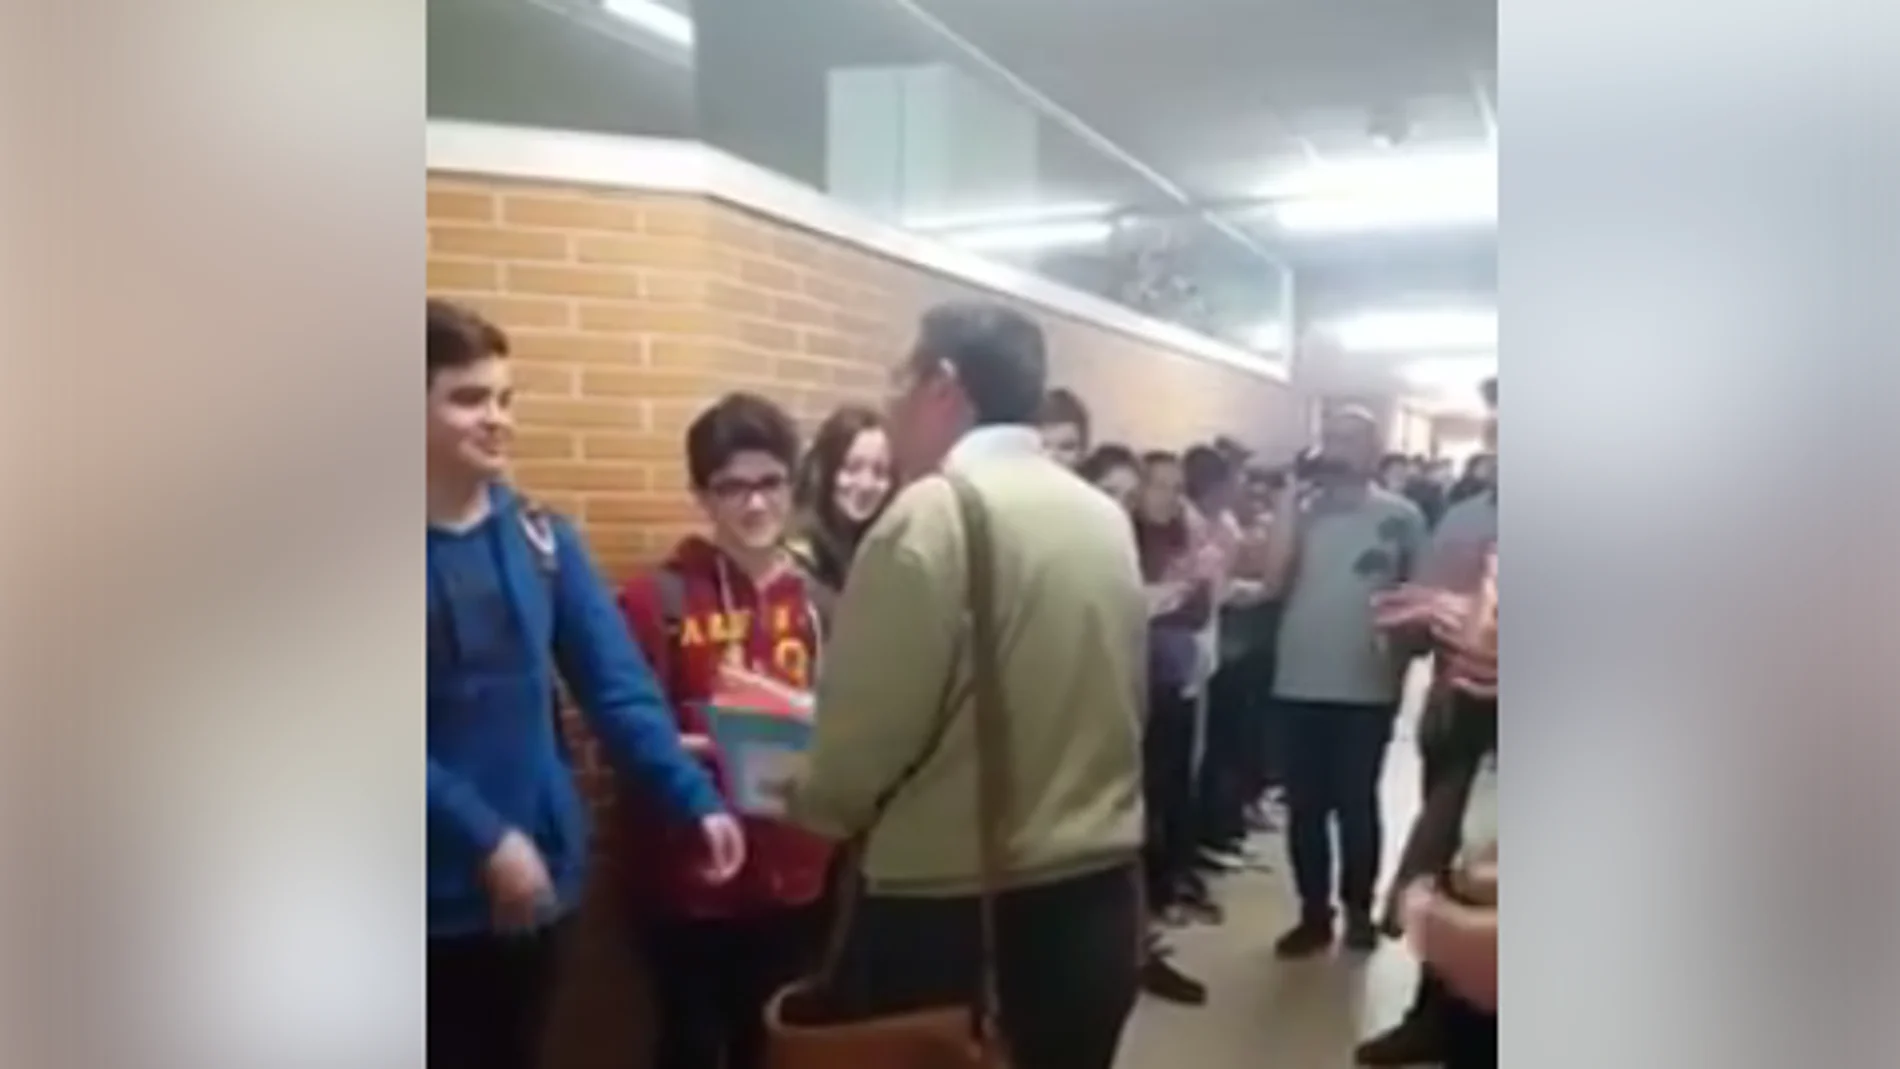  Graban la ovación de cientos de alumnos a un profesor que se jubila y el video se viraliza